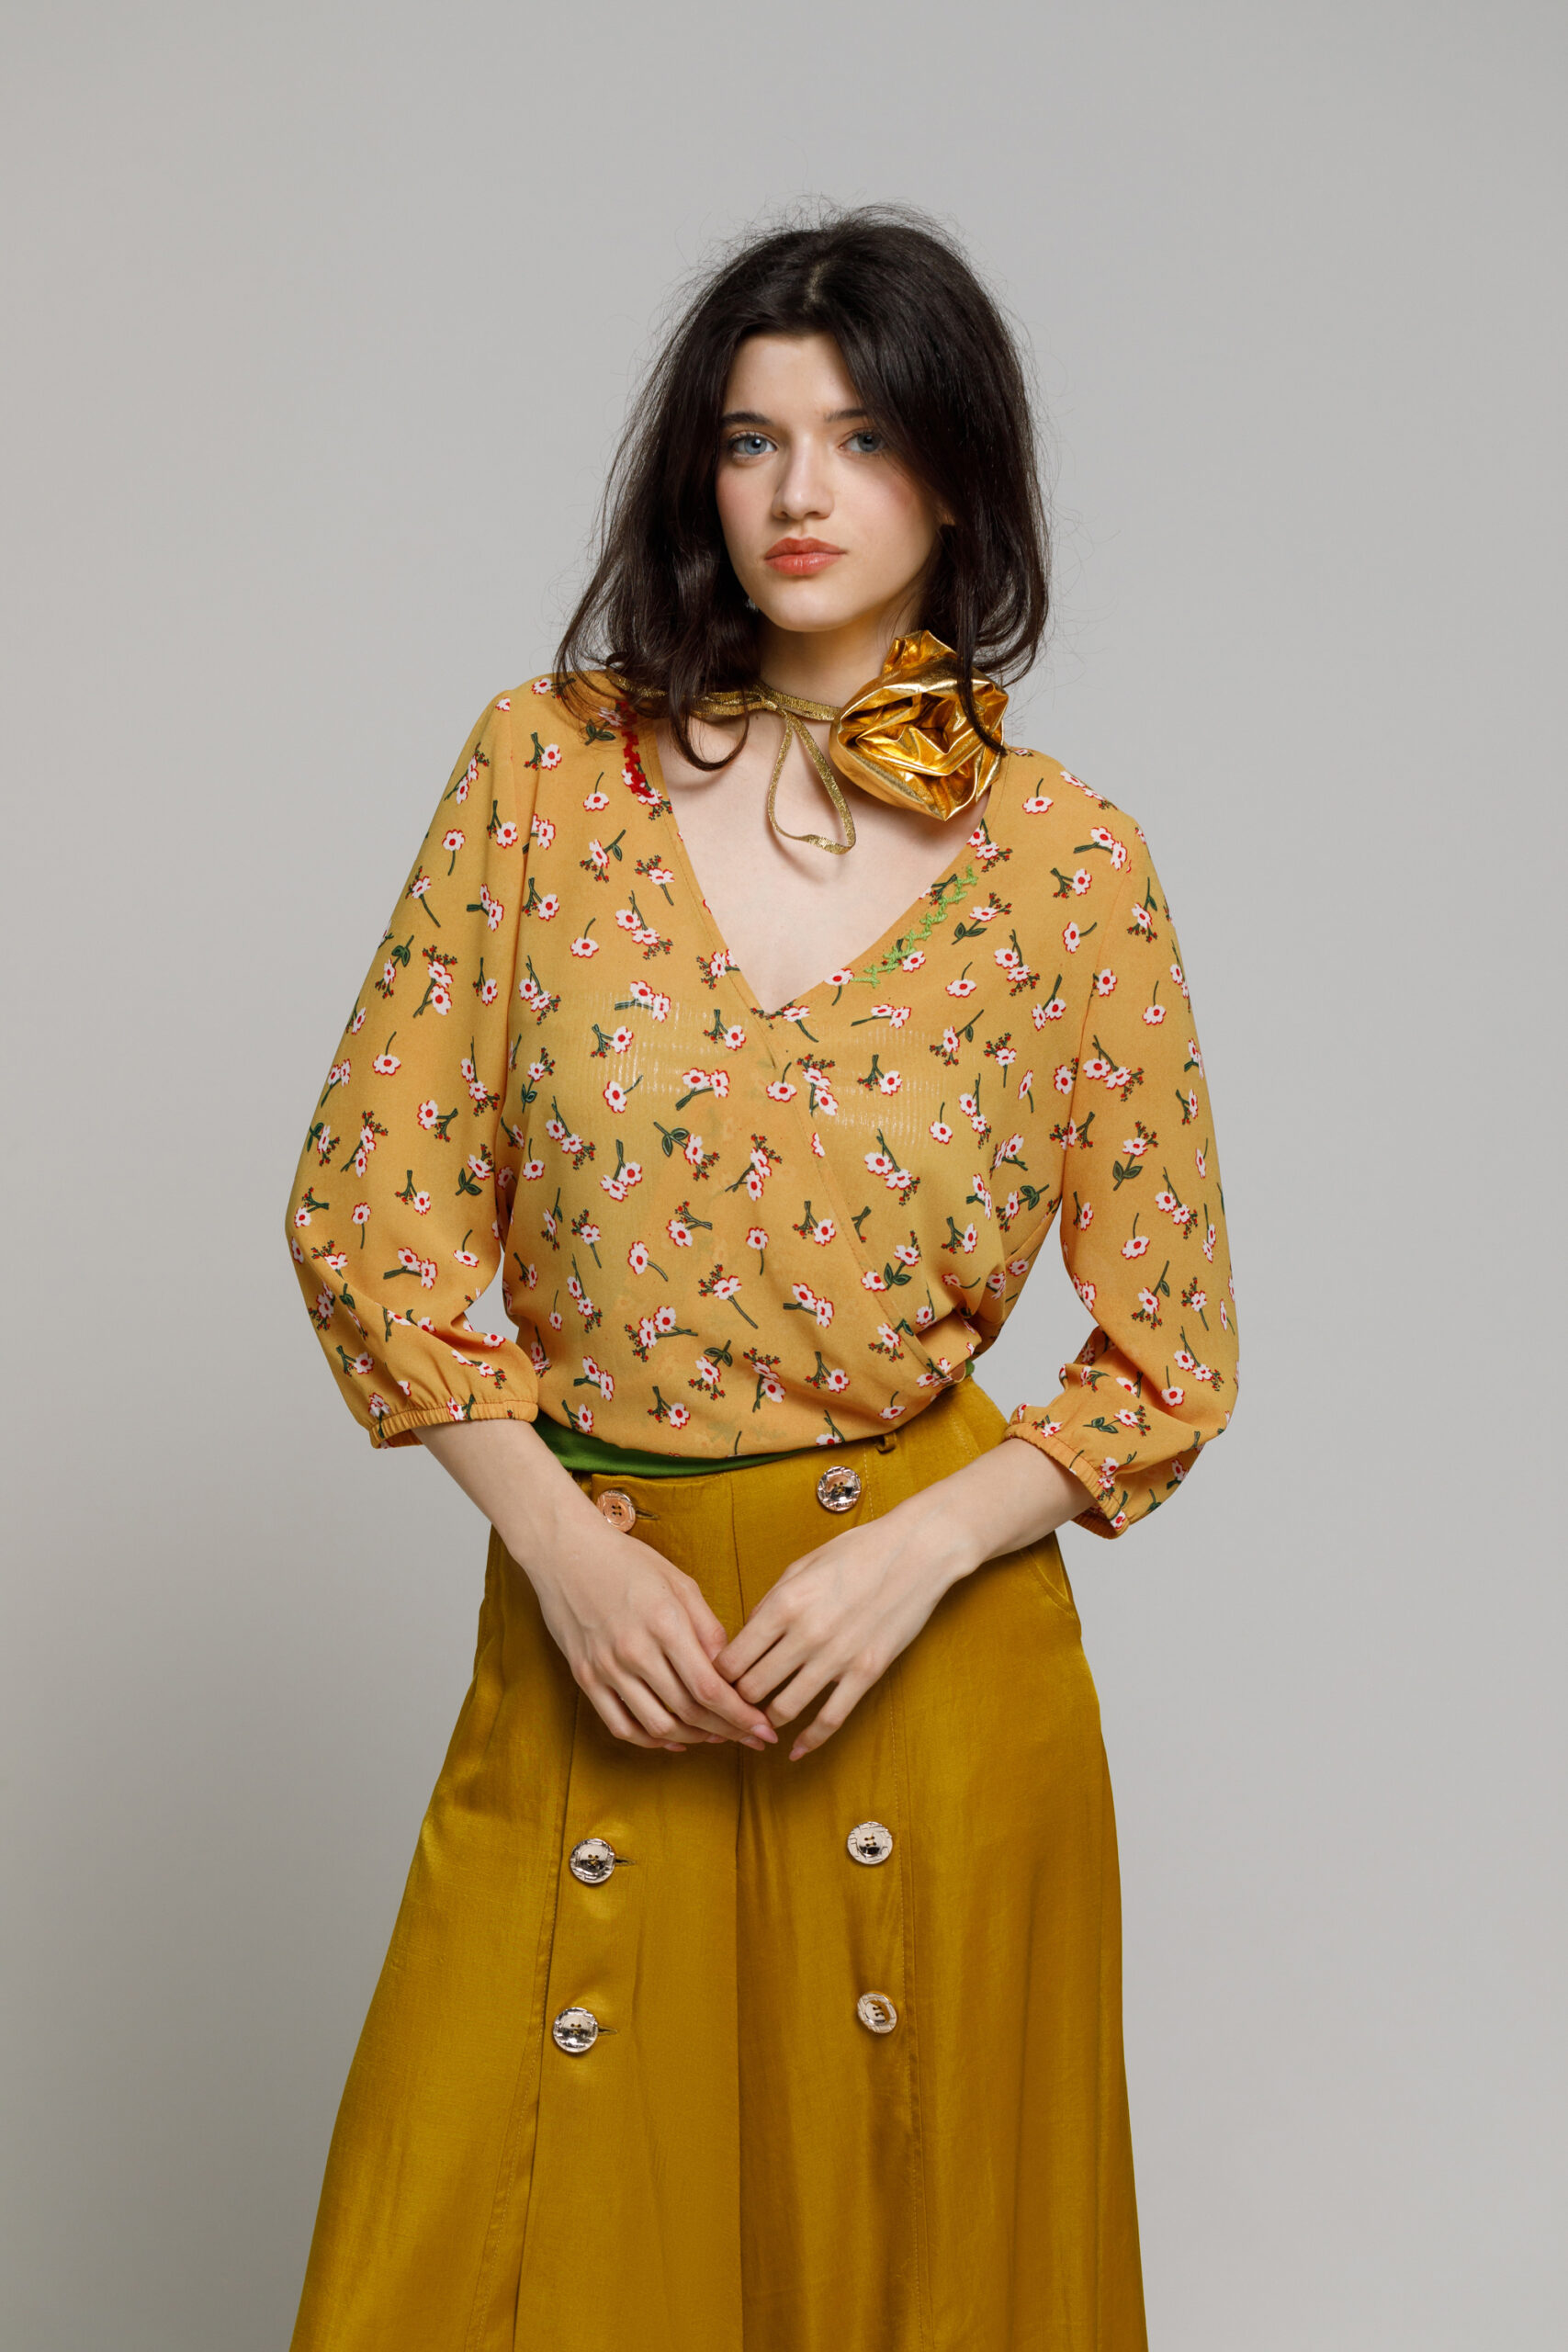 Bluza VIOLA24  mustar cu imprimeu floral din voal. Materiale naturale, design unicat, cu broderie si aplicatii handmade